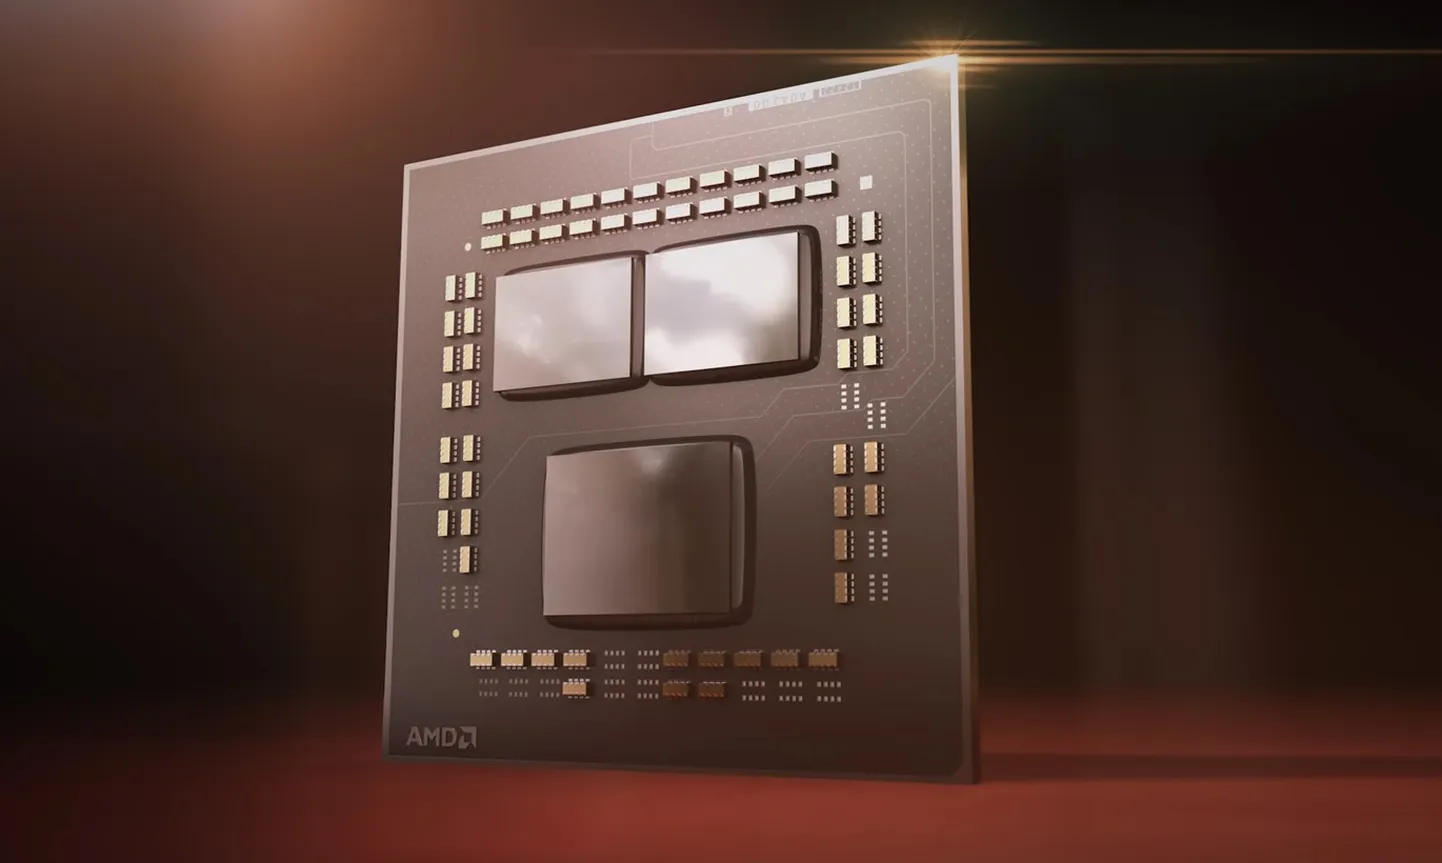 AMD Zen 2 mikroarhitektuurist alates kasutab firma ühel alusplaadil kolm pisikiipi - üks I/O ehk liidese kiip ning kaks arvutuskiipi. Kiipide suuruse ja arhitektuurse disaini tõttu on see odavaim viis toota võimsaid protsessoreid.